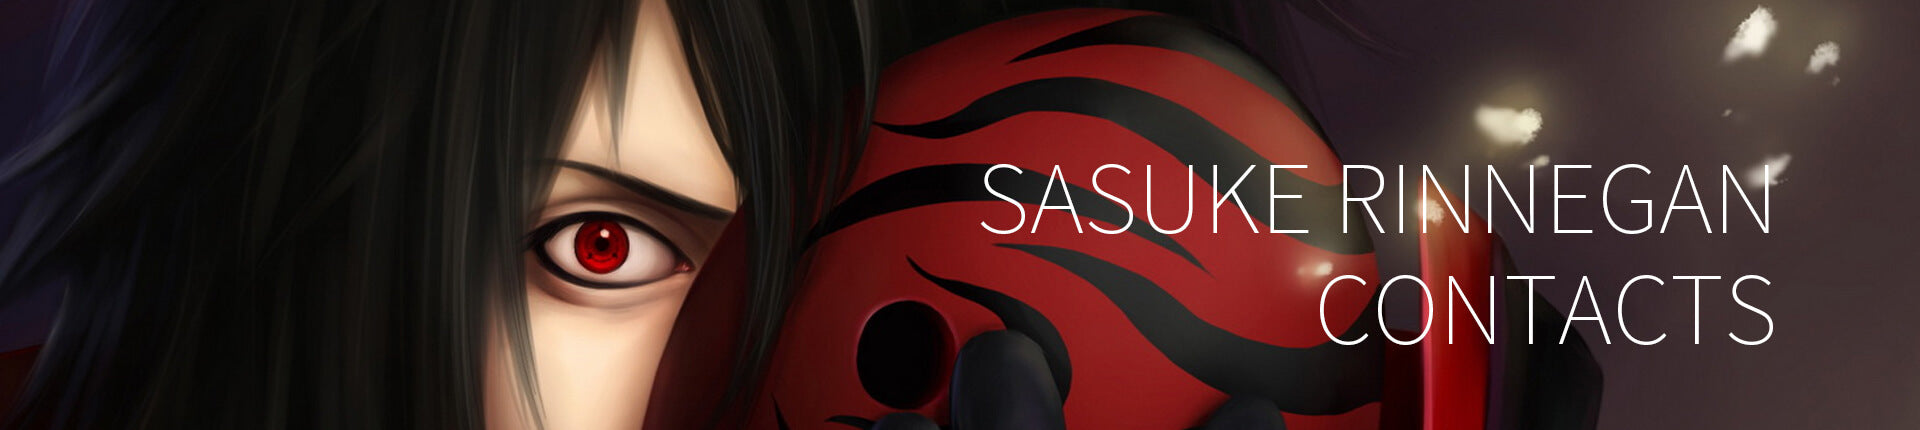 Sasuke Rinnegan Contacts